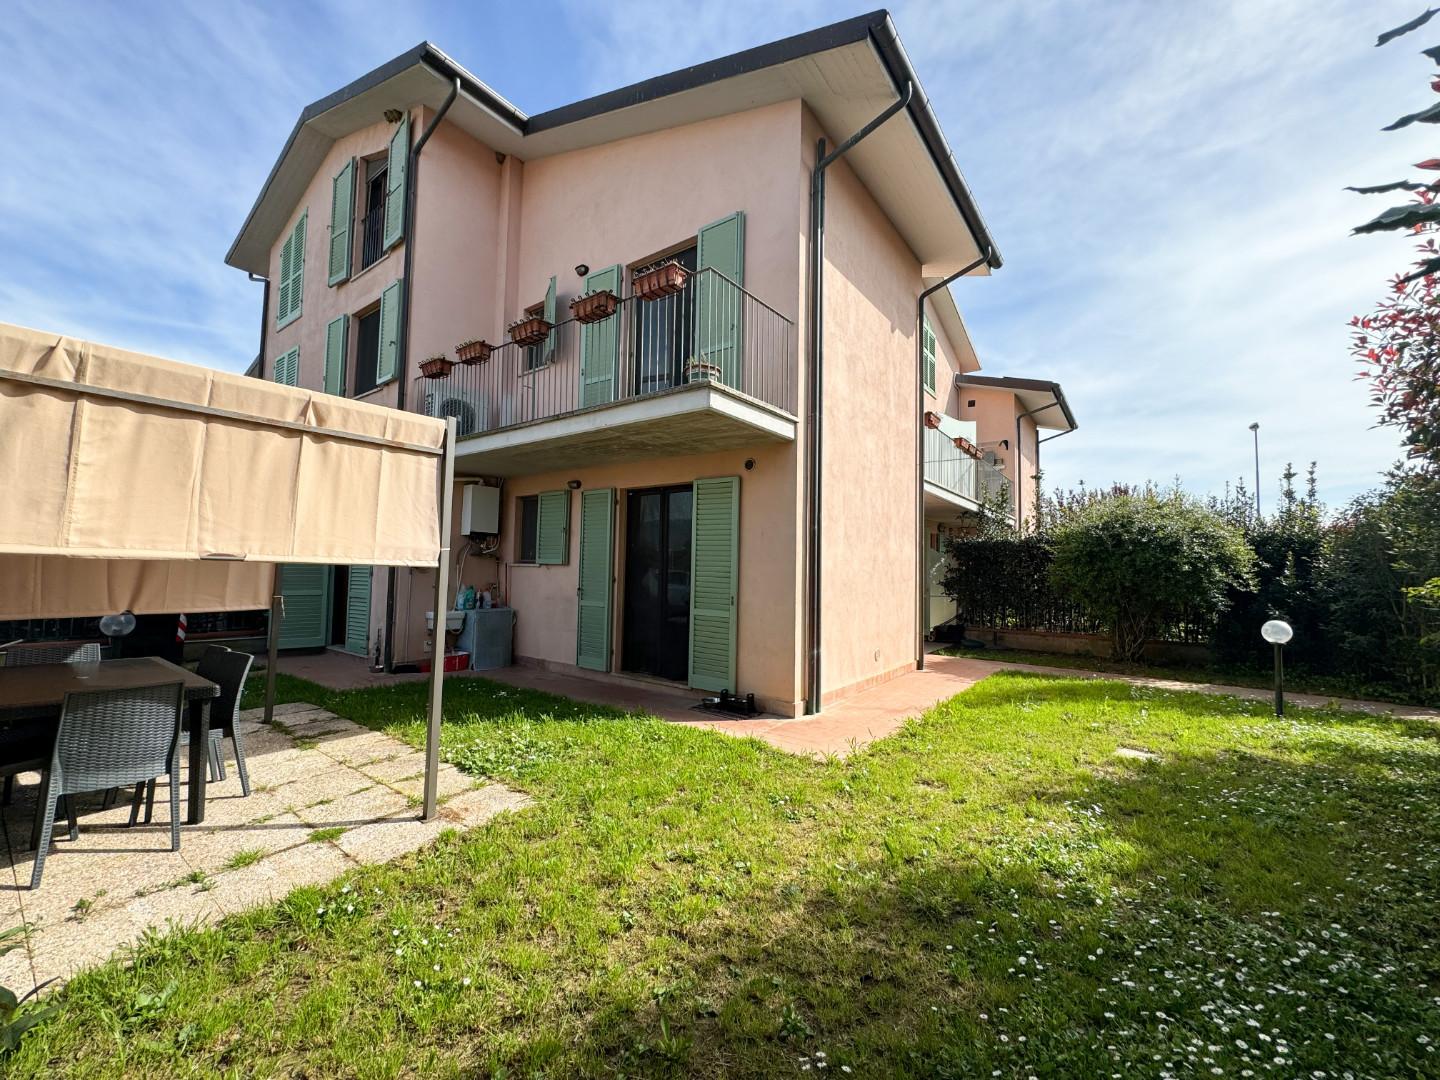 Villa Tri-Quadrifamiliare in vendita a Cascina, 5 locali, prezzo € 345.000 | PortaleAgenzieImmobiliari.it